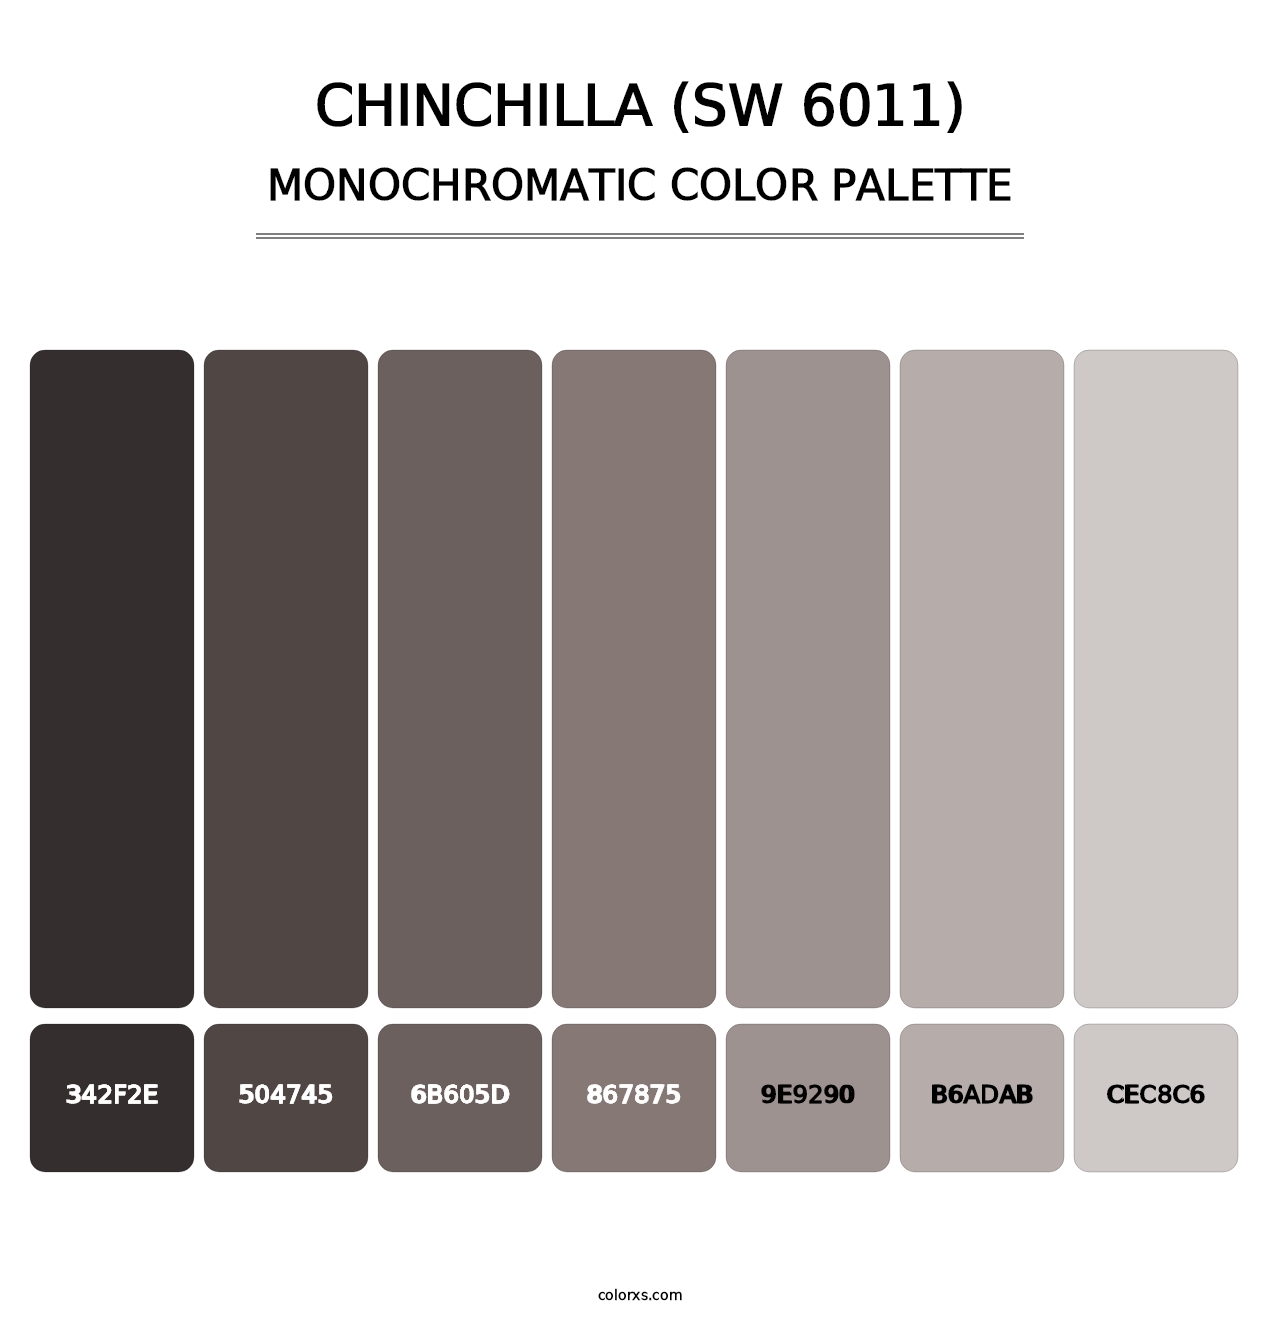 Chinchilla (SW 6011) - Monochromatic Color Palette